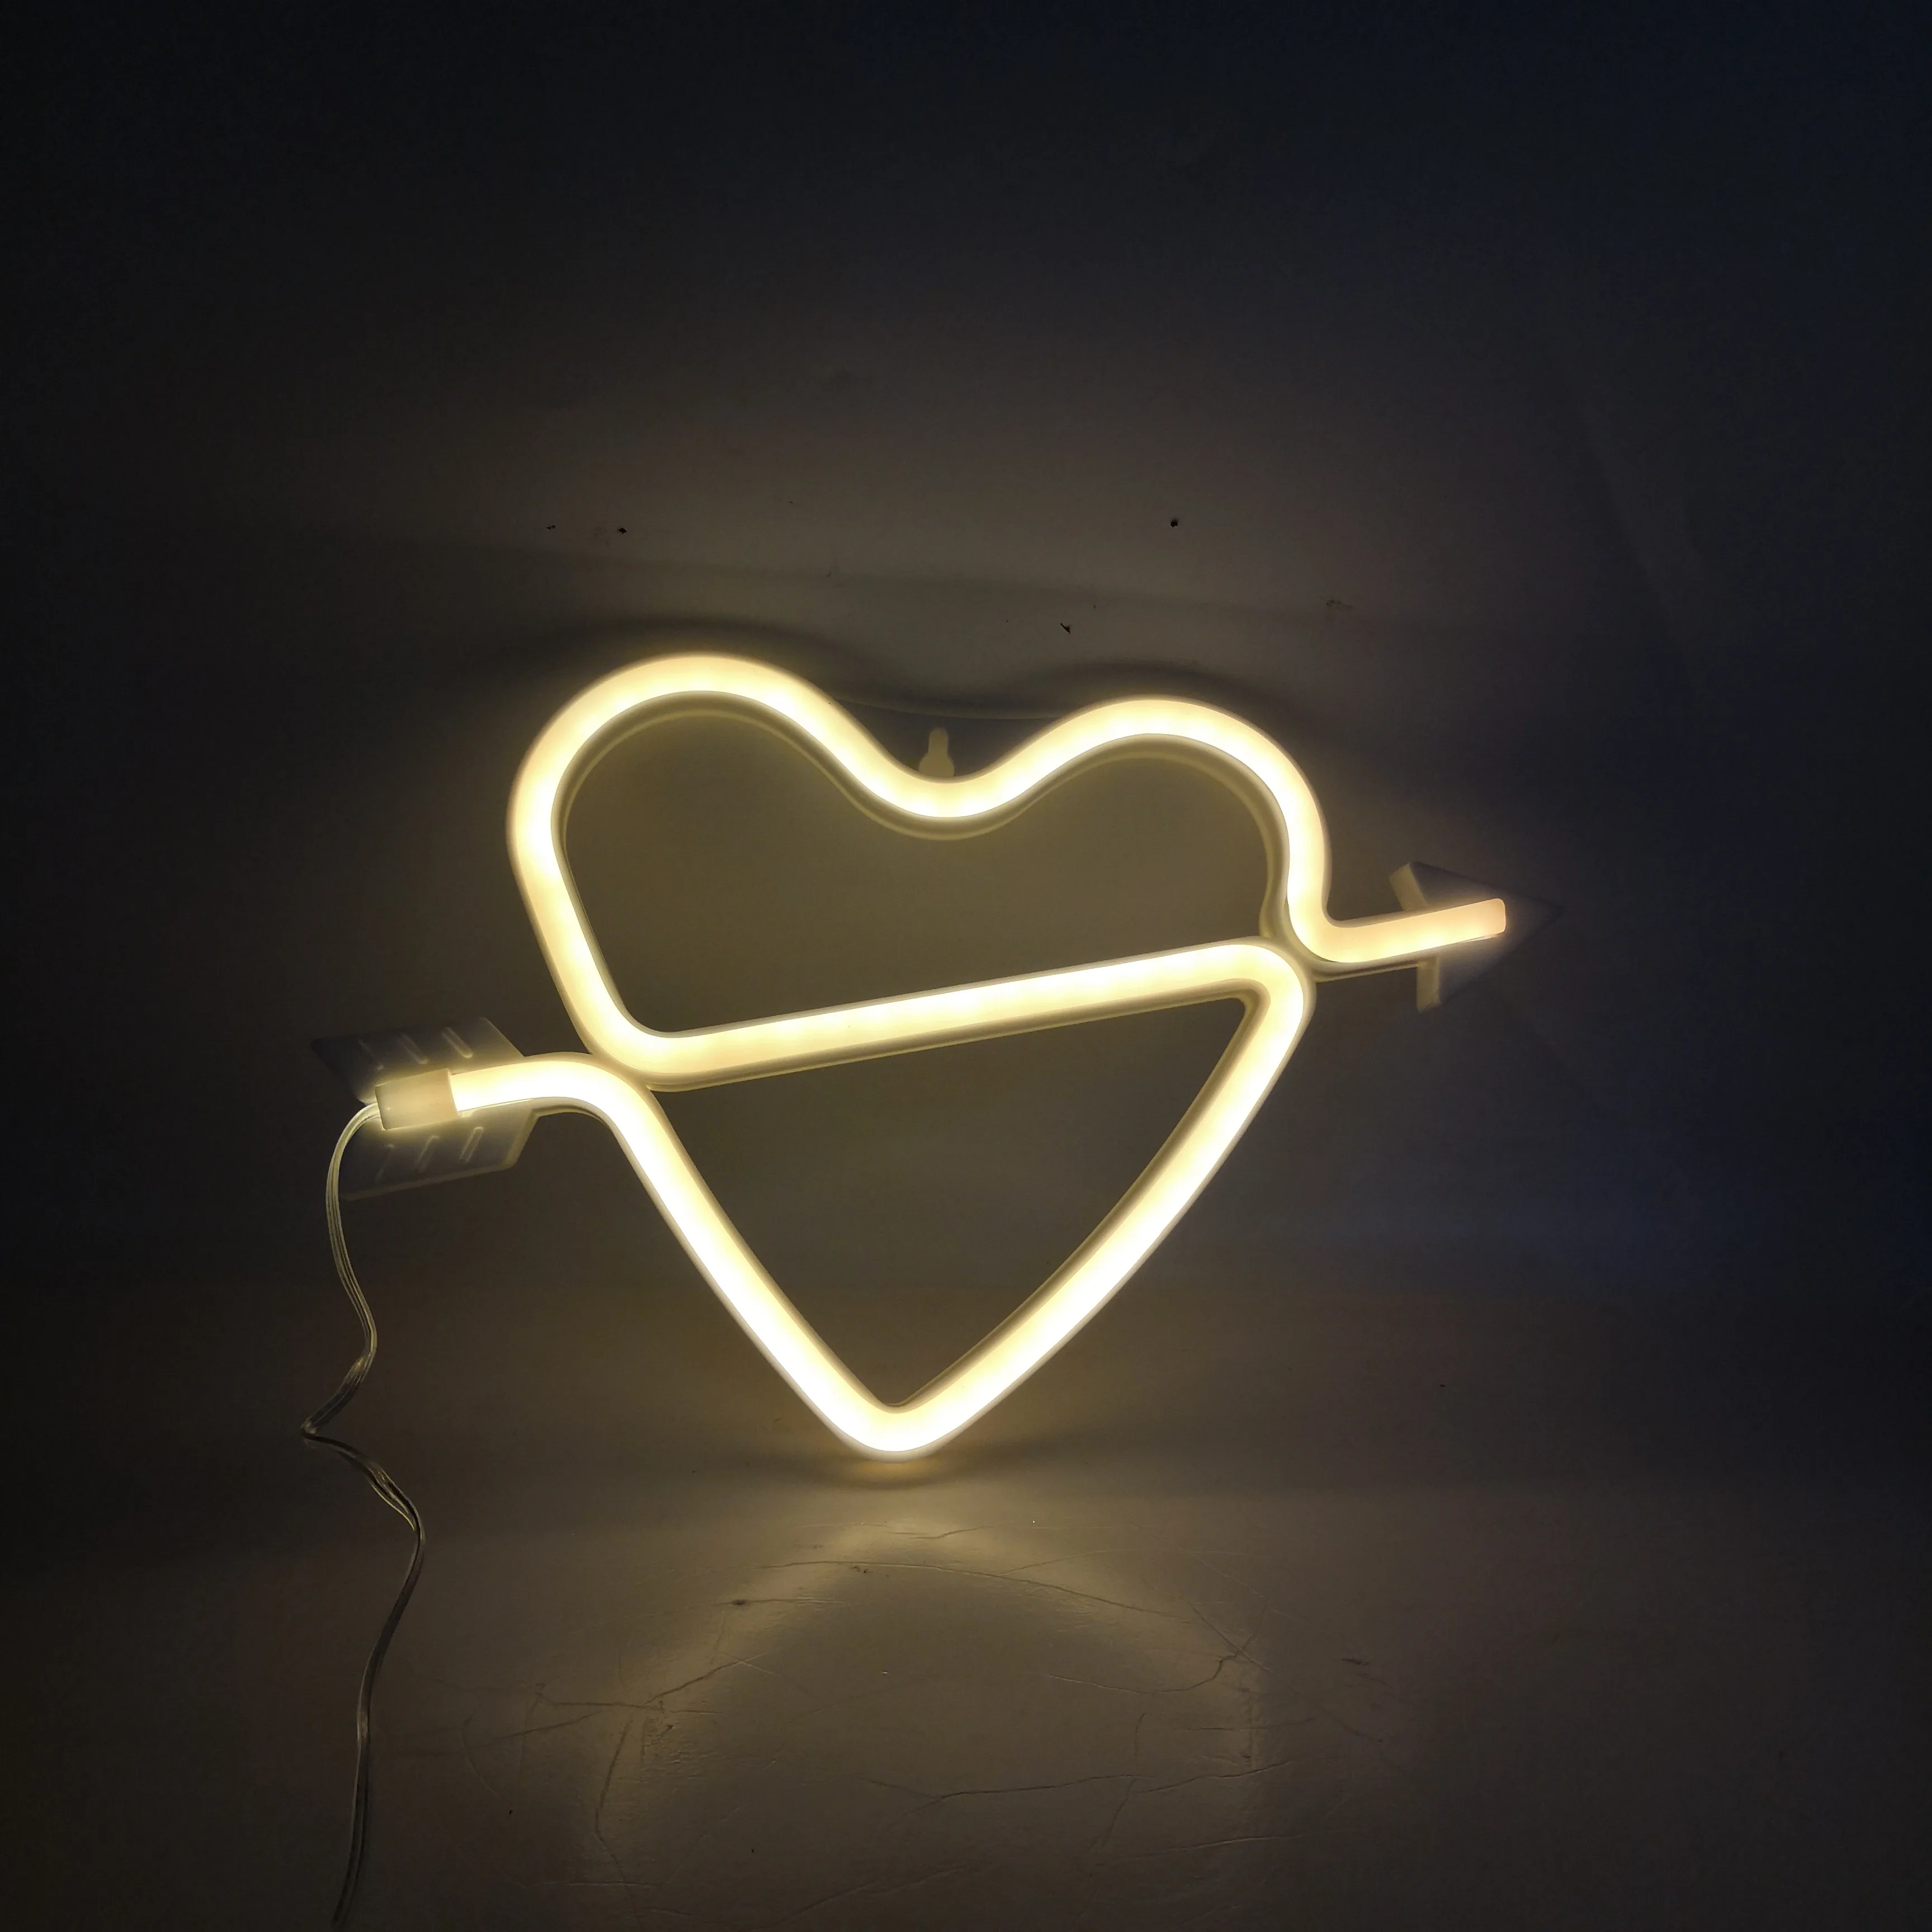 Rose la forme de Bow Cupidon Neon Light LED romantique Coeur de nuit Lampes amour Marquee Lettre batterie et USB Se connecter Exploité Néons pour Chambre Salon Bureau Salle de fête danniversaire de 